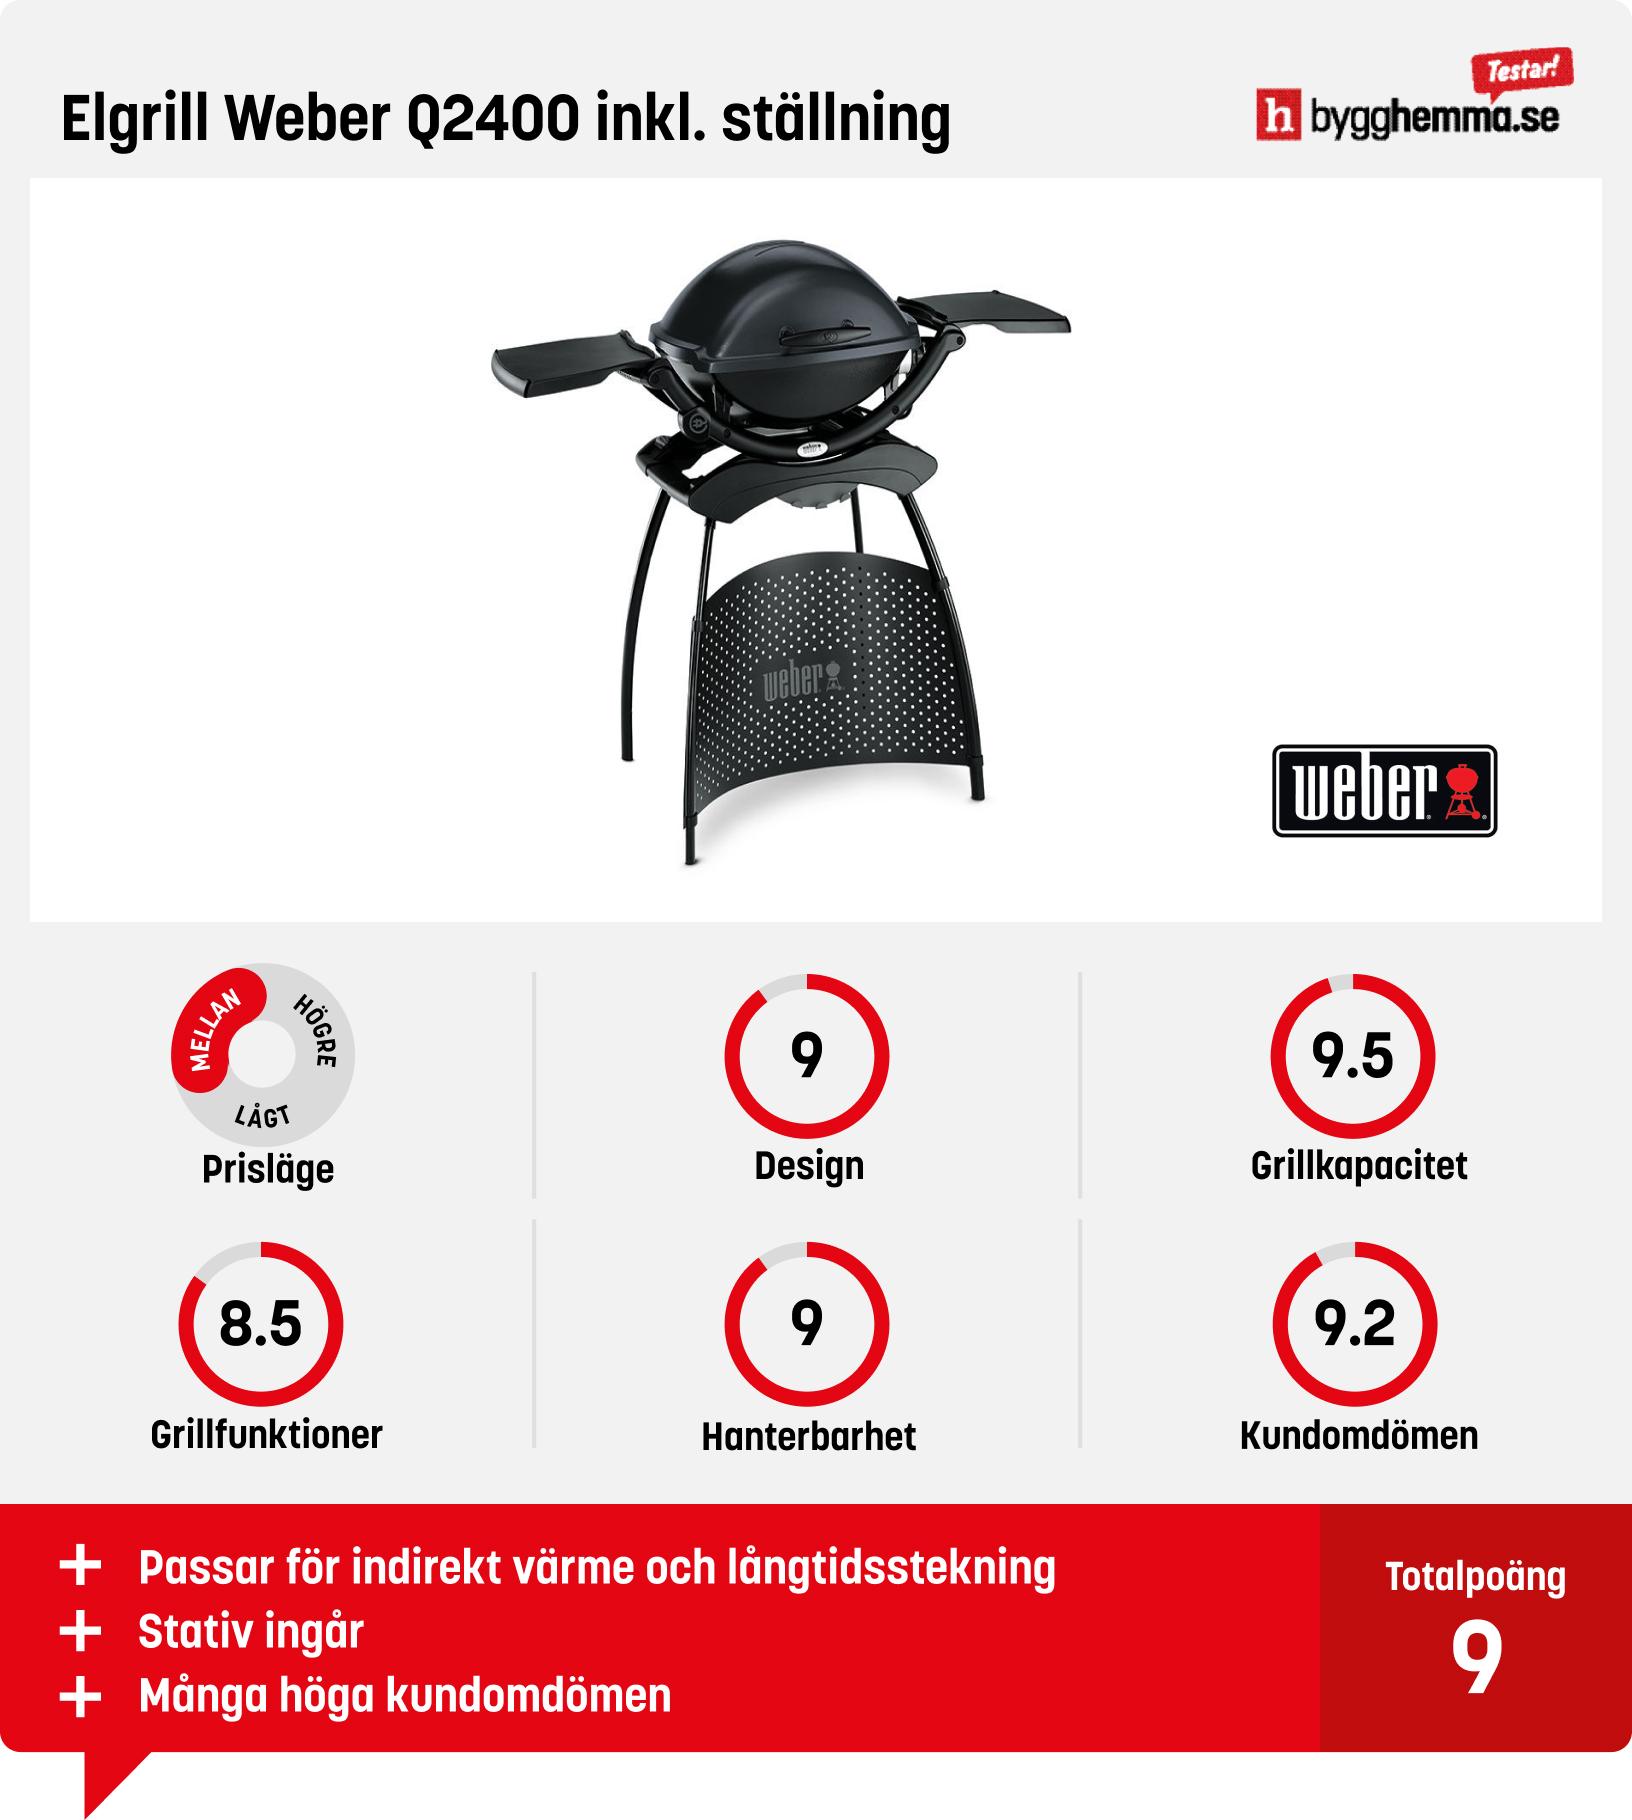 Elgrill bäst i test - Elgrill Weber Q2400 inkl. ställning